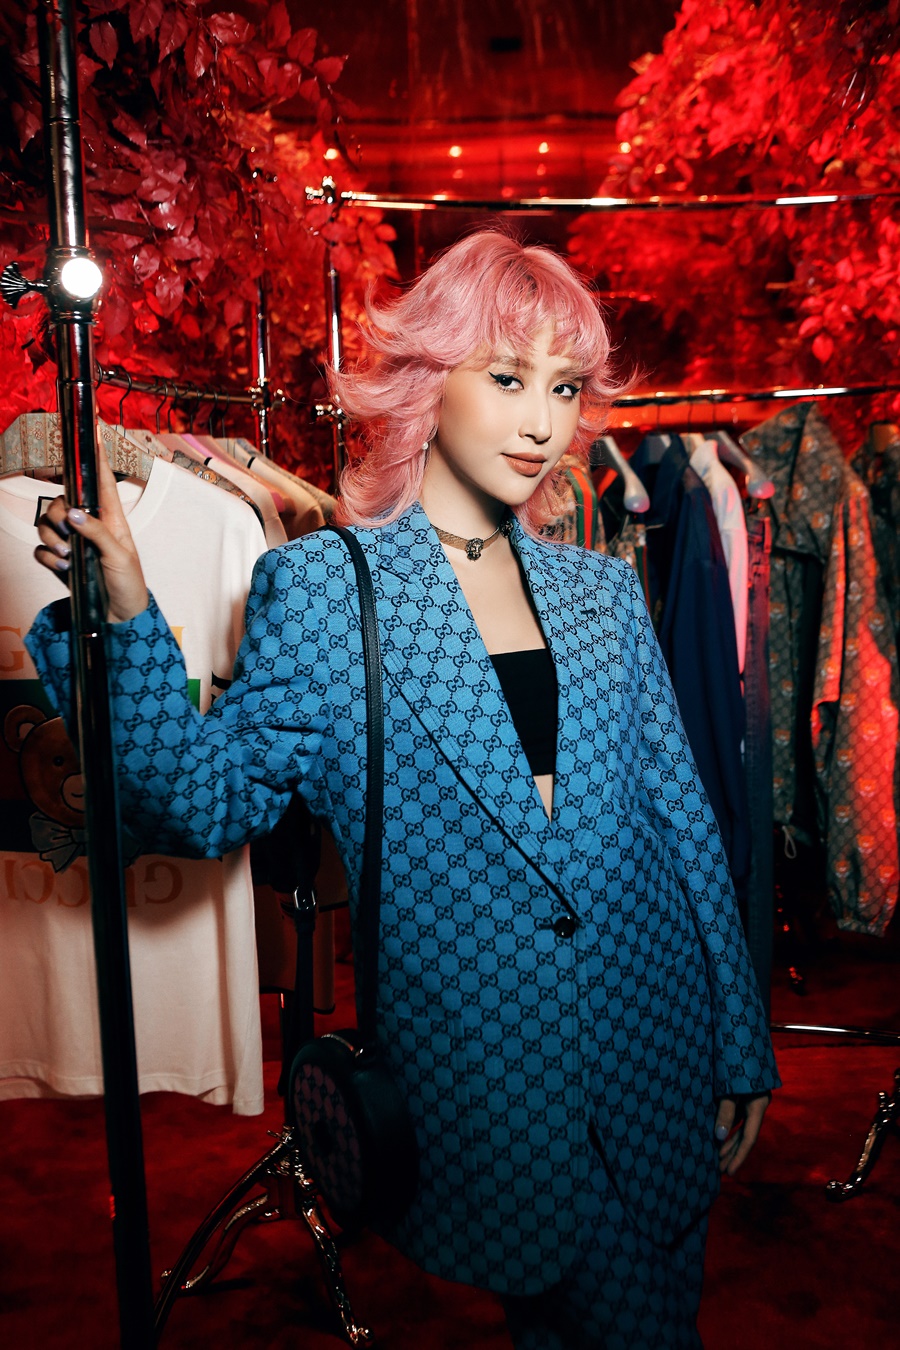 Quỳnh Anh Shyn cũng nổi bật không kém khi xuất hiện cùng mái tóc màu hồng và bộ vest xanh lam mang hoạ tiết Gucci đặc trưng. Trang phục đơn sắc được tạo điểm nhấn bằng chiếc túi dáng tròn, cùng tông màu hồng với tóc của nàng fashionista.